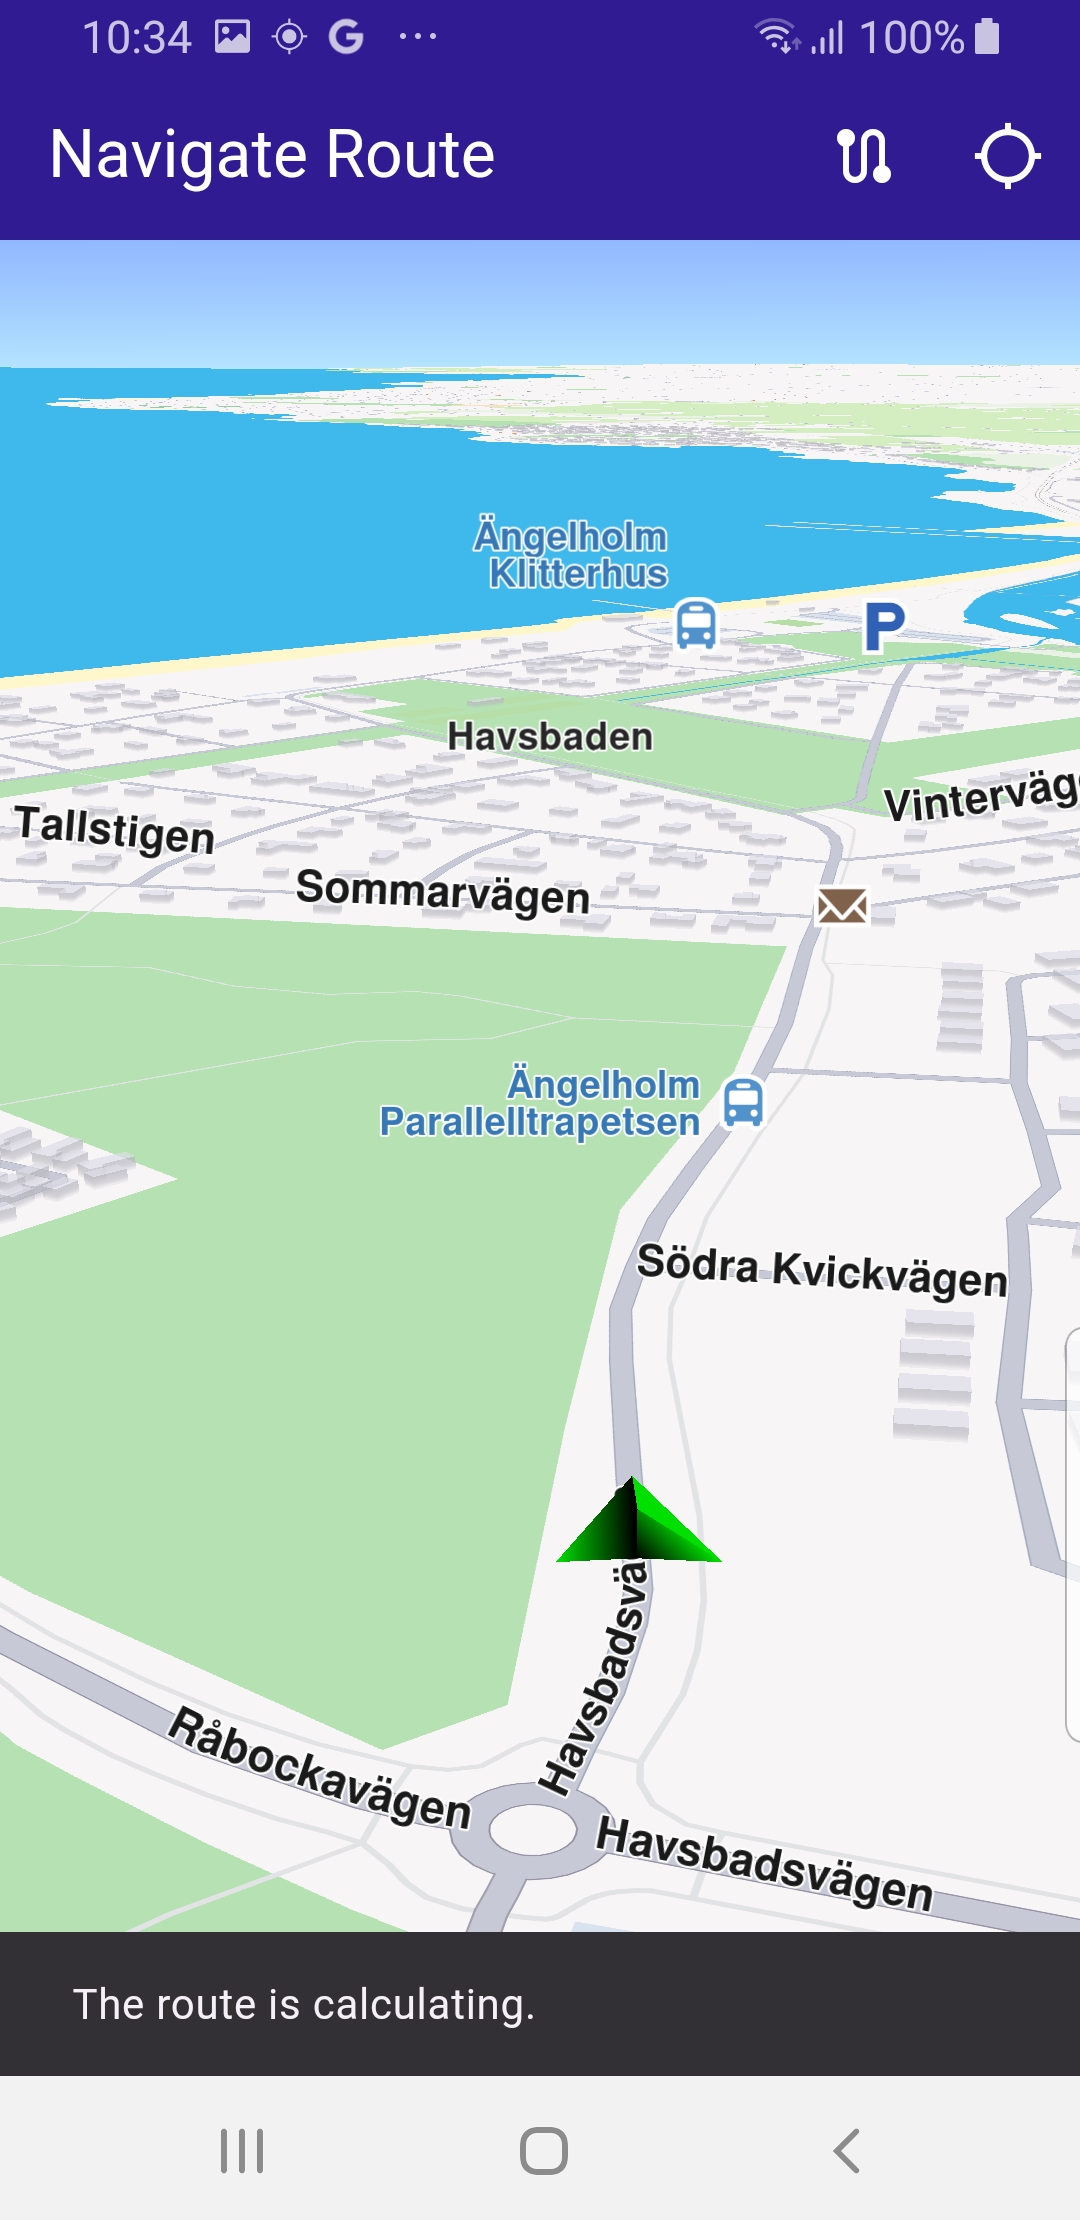 navigate_route - example flutter screenshot